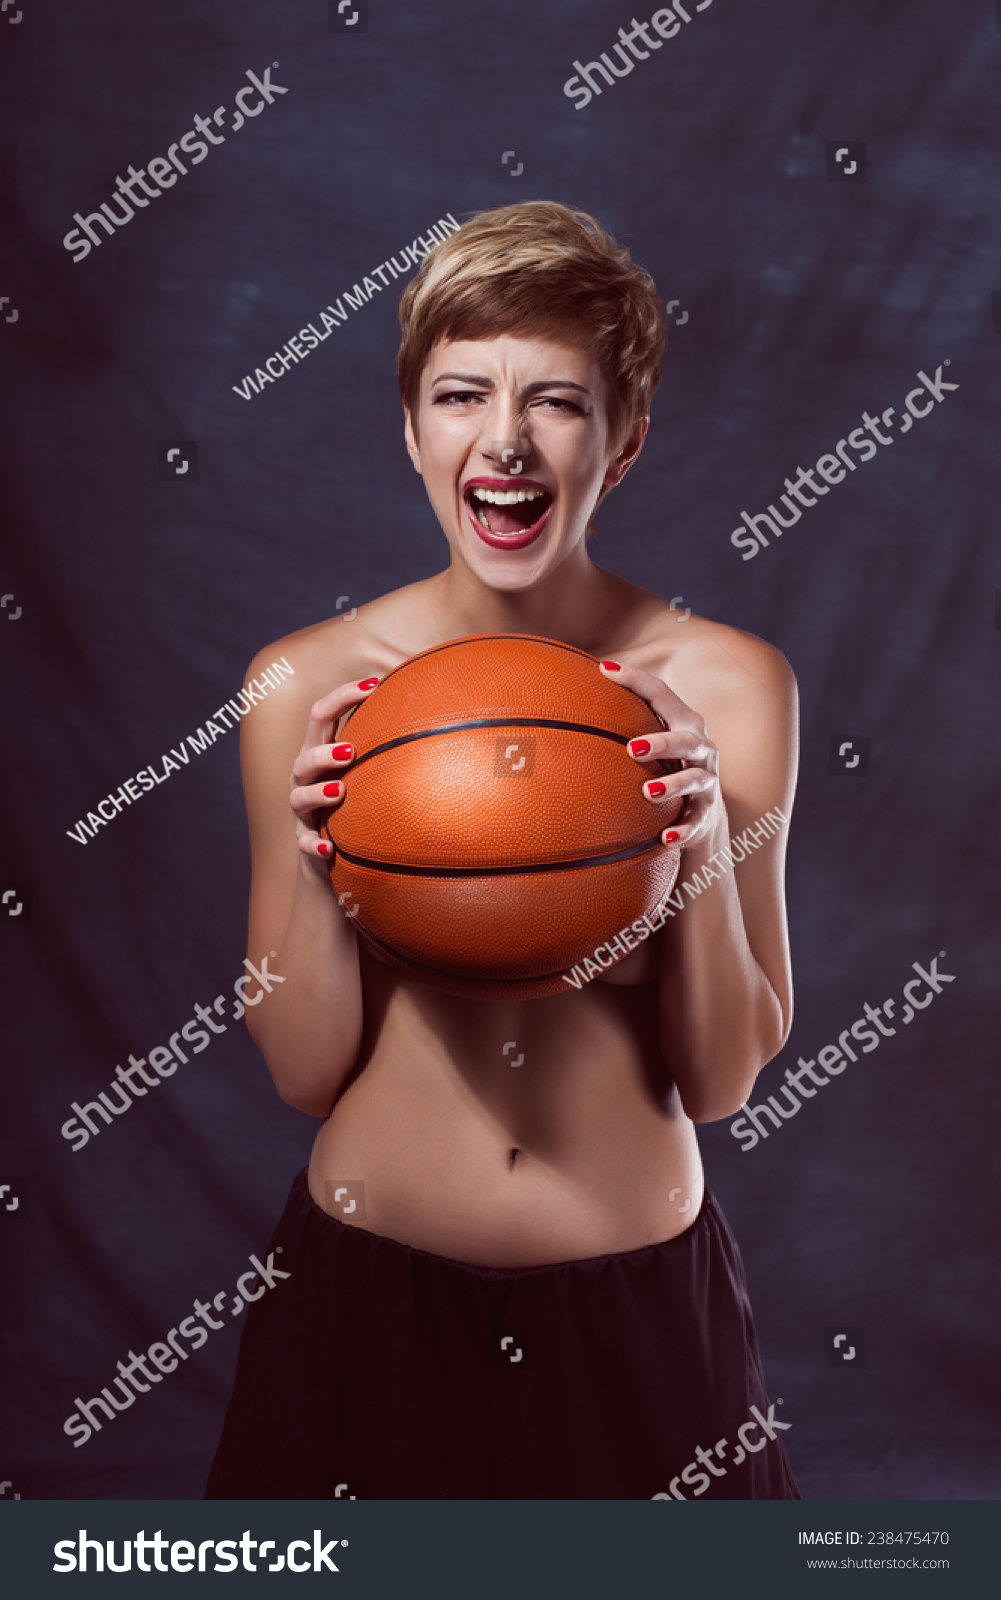 Naked Women Basketball